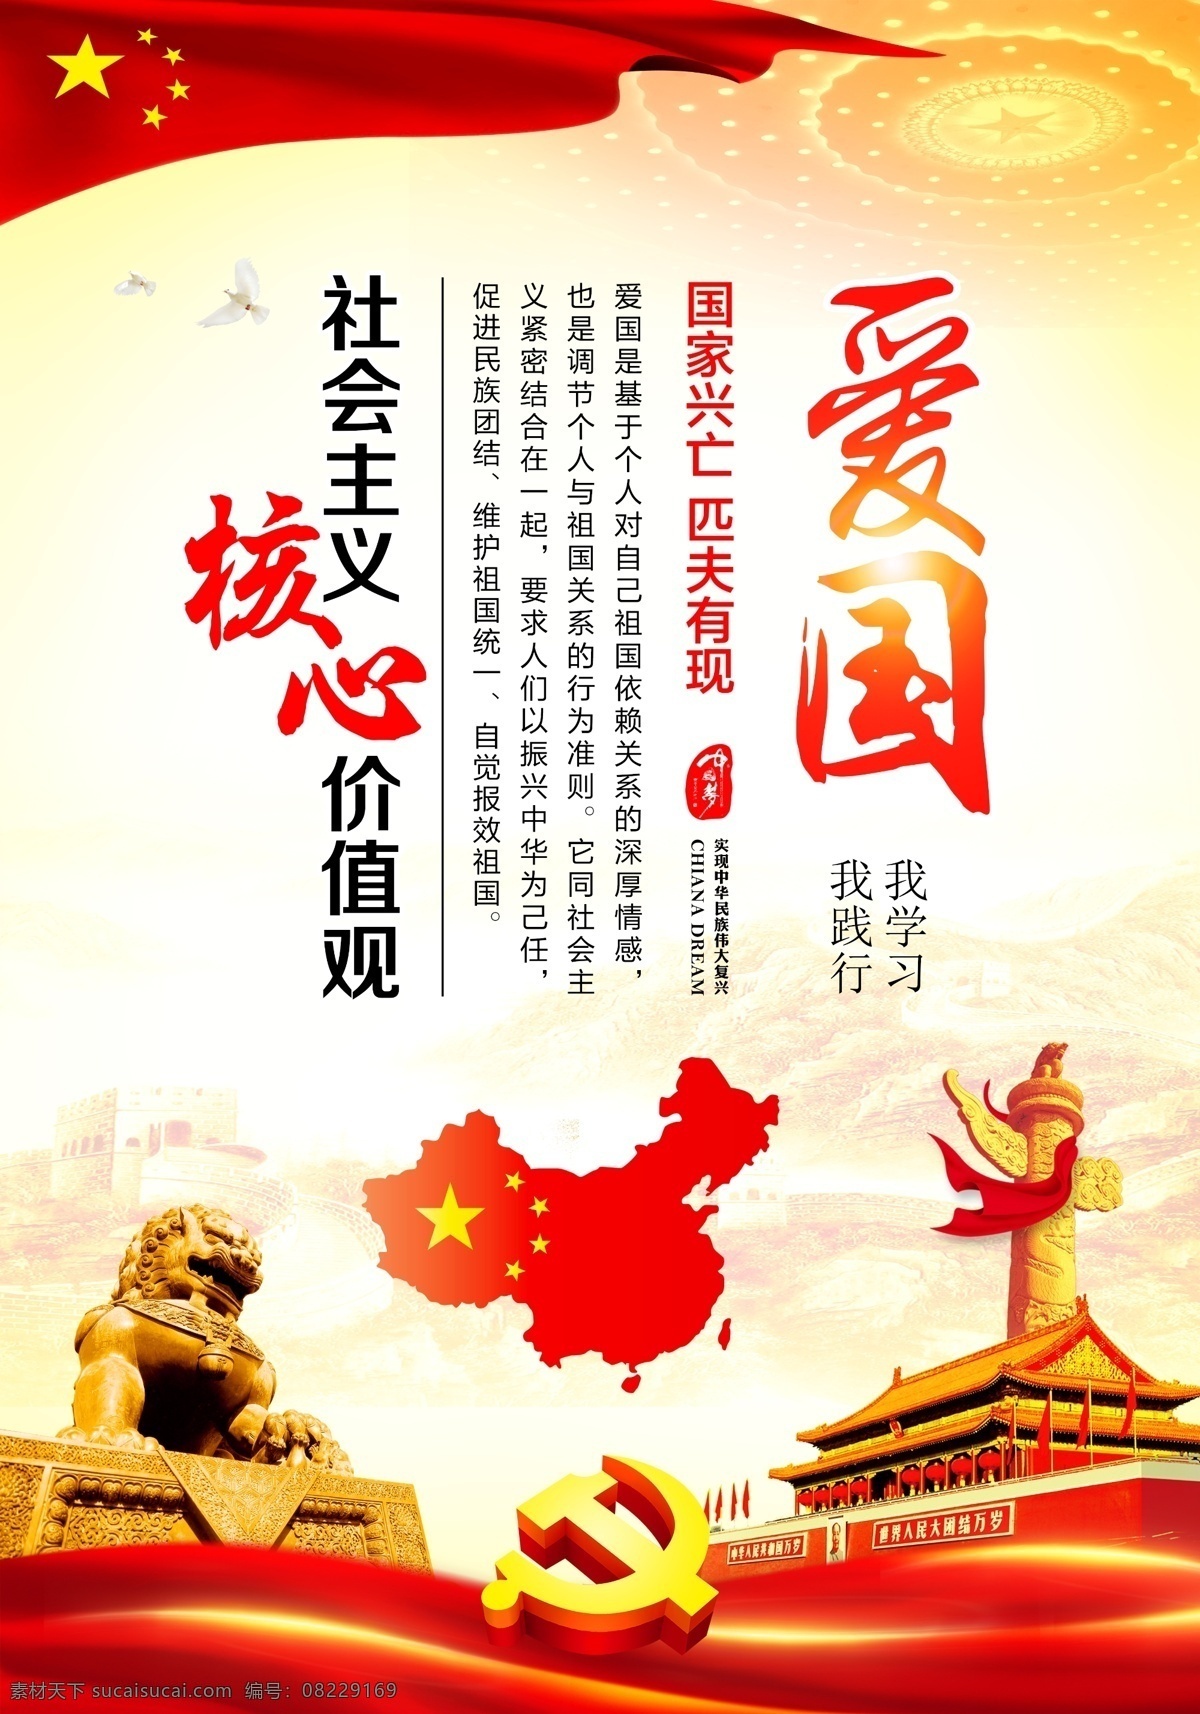 社会主义 价值观 党建 核心观念 核心 观 党建海报 爱国 中国地图 狮子 红旗 飘带